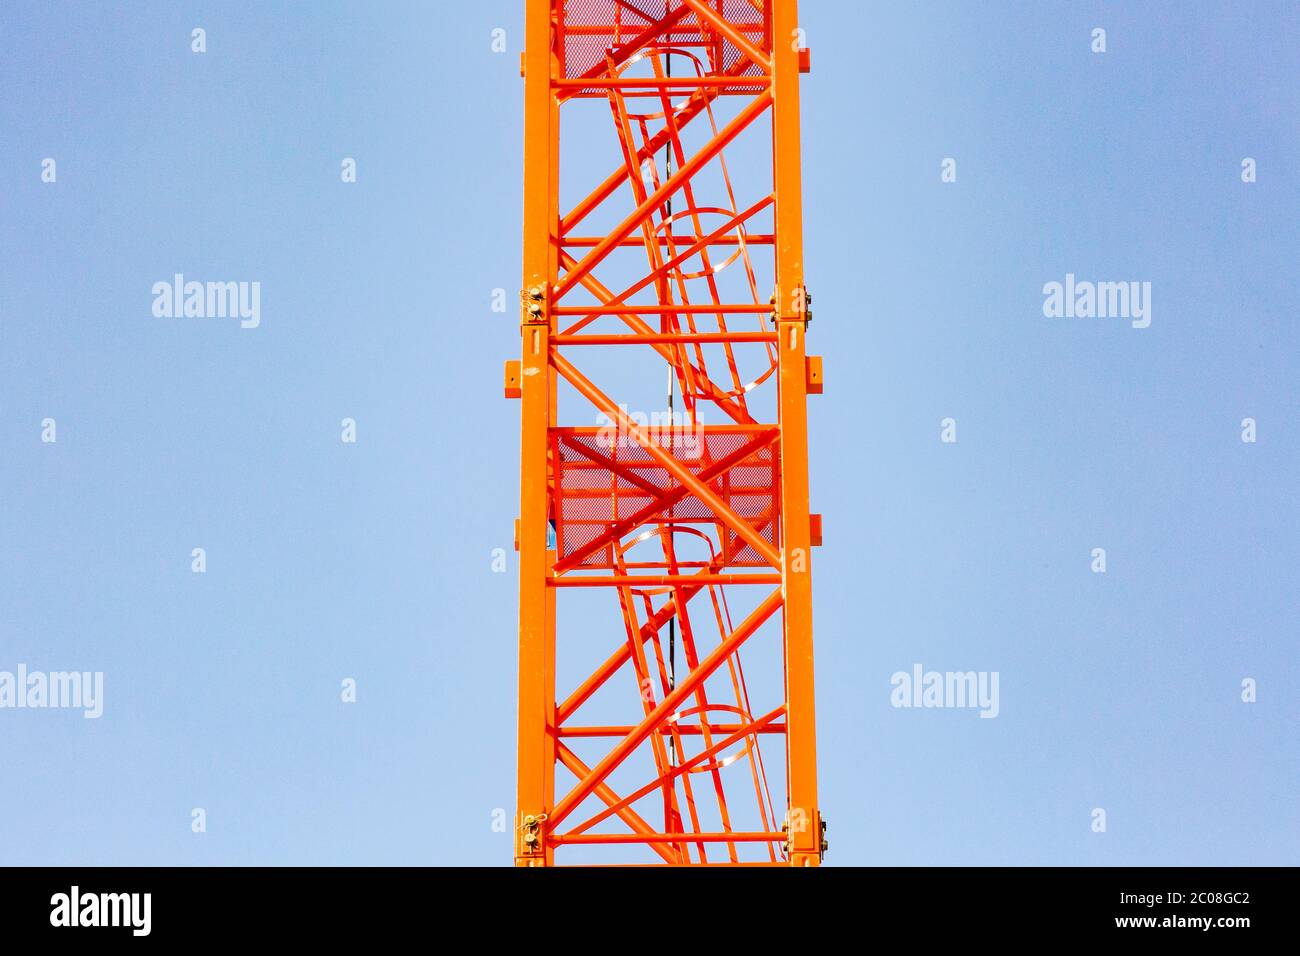 Turmdrehkran am Bodensee für neues städtisches Parkhaus am Fährhafen. Meersburg, 27.05.2020 Stock Photo